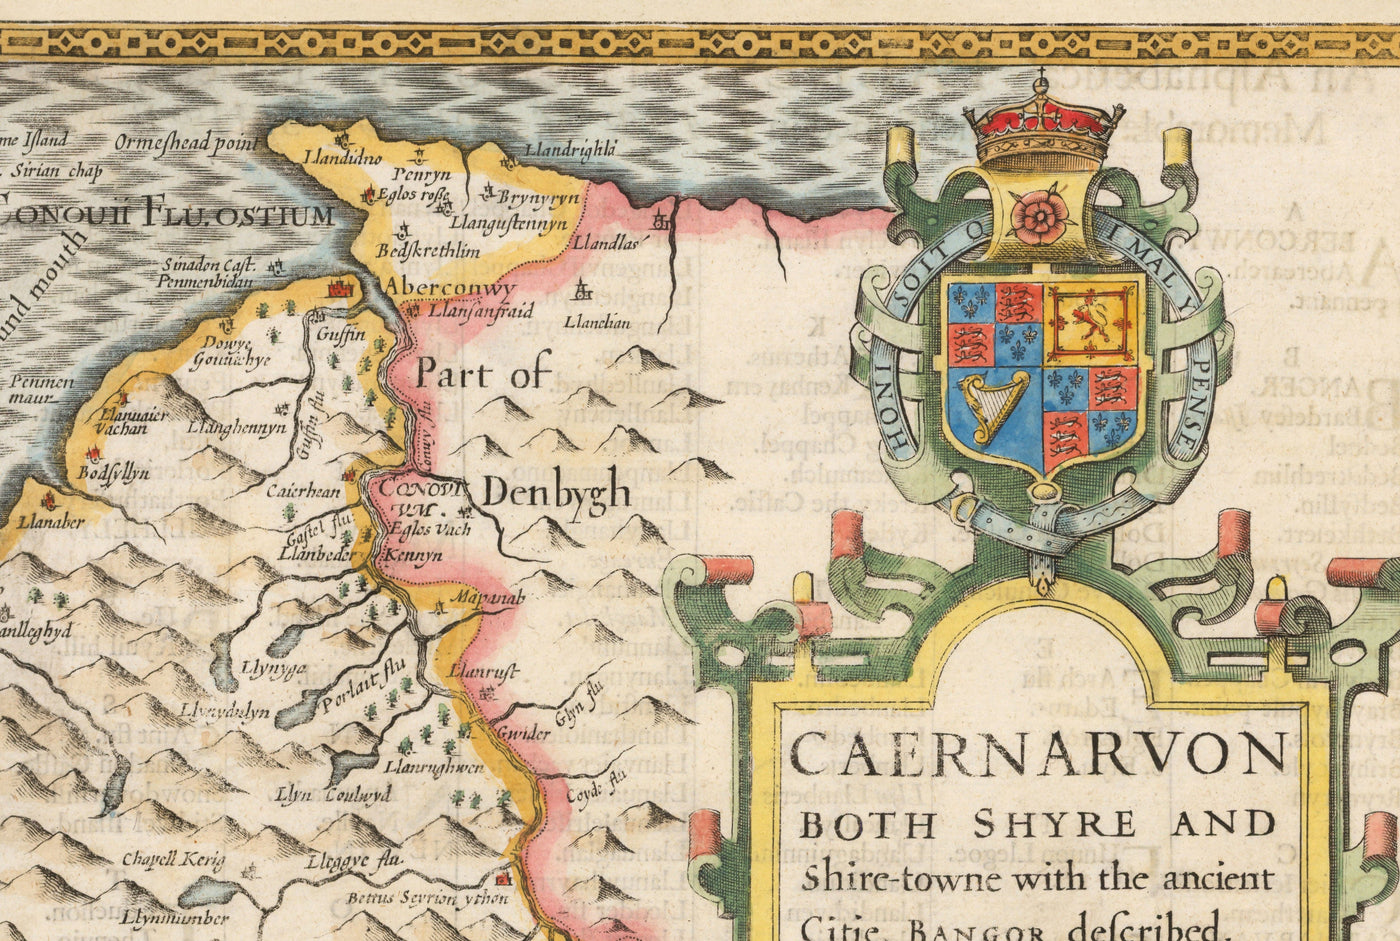 Antiguo mapa de Caernarfonshire Gales, 1611 por John Speed - Caernarfon, Snowdon, Gwynedd, Bangor, Conwy, Llandudno